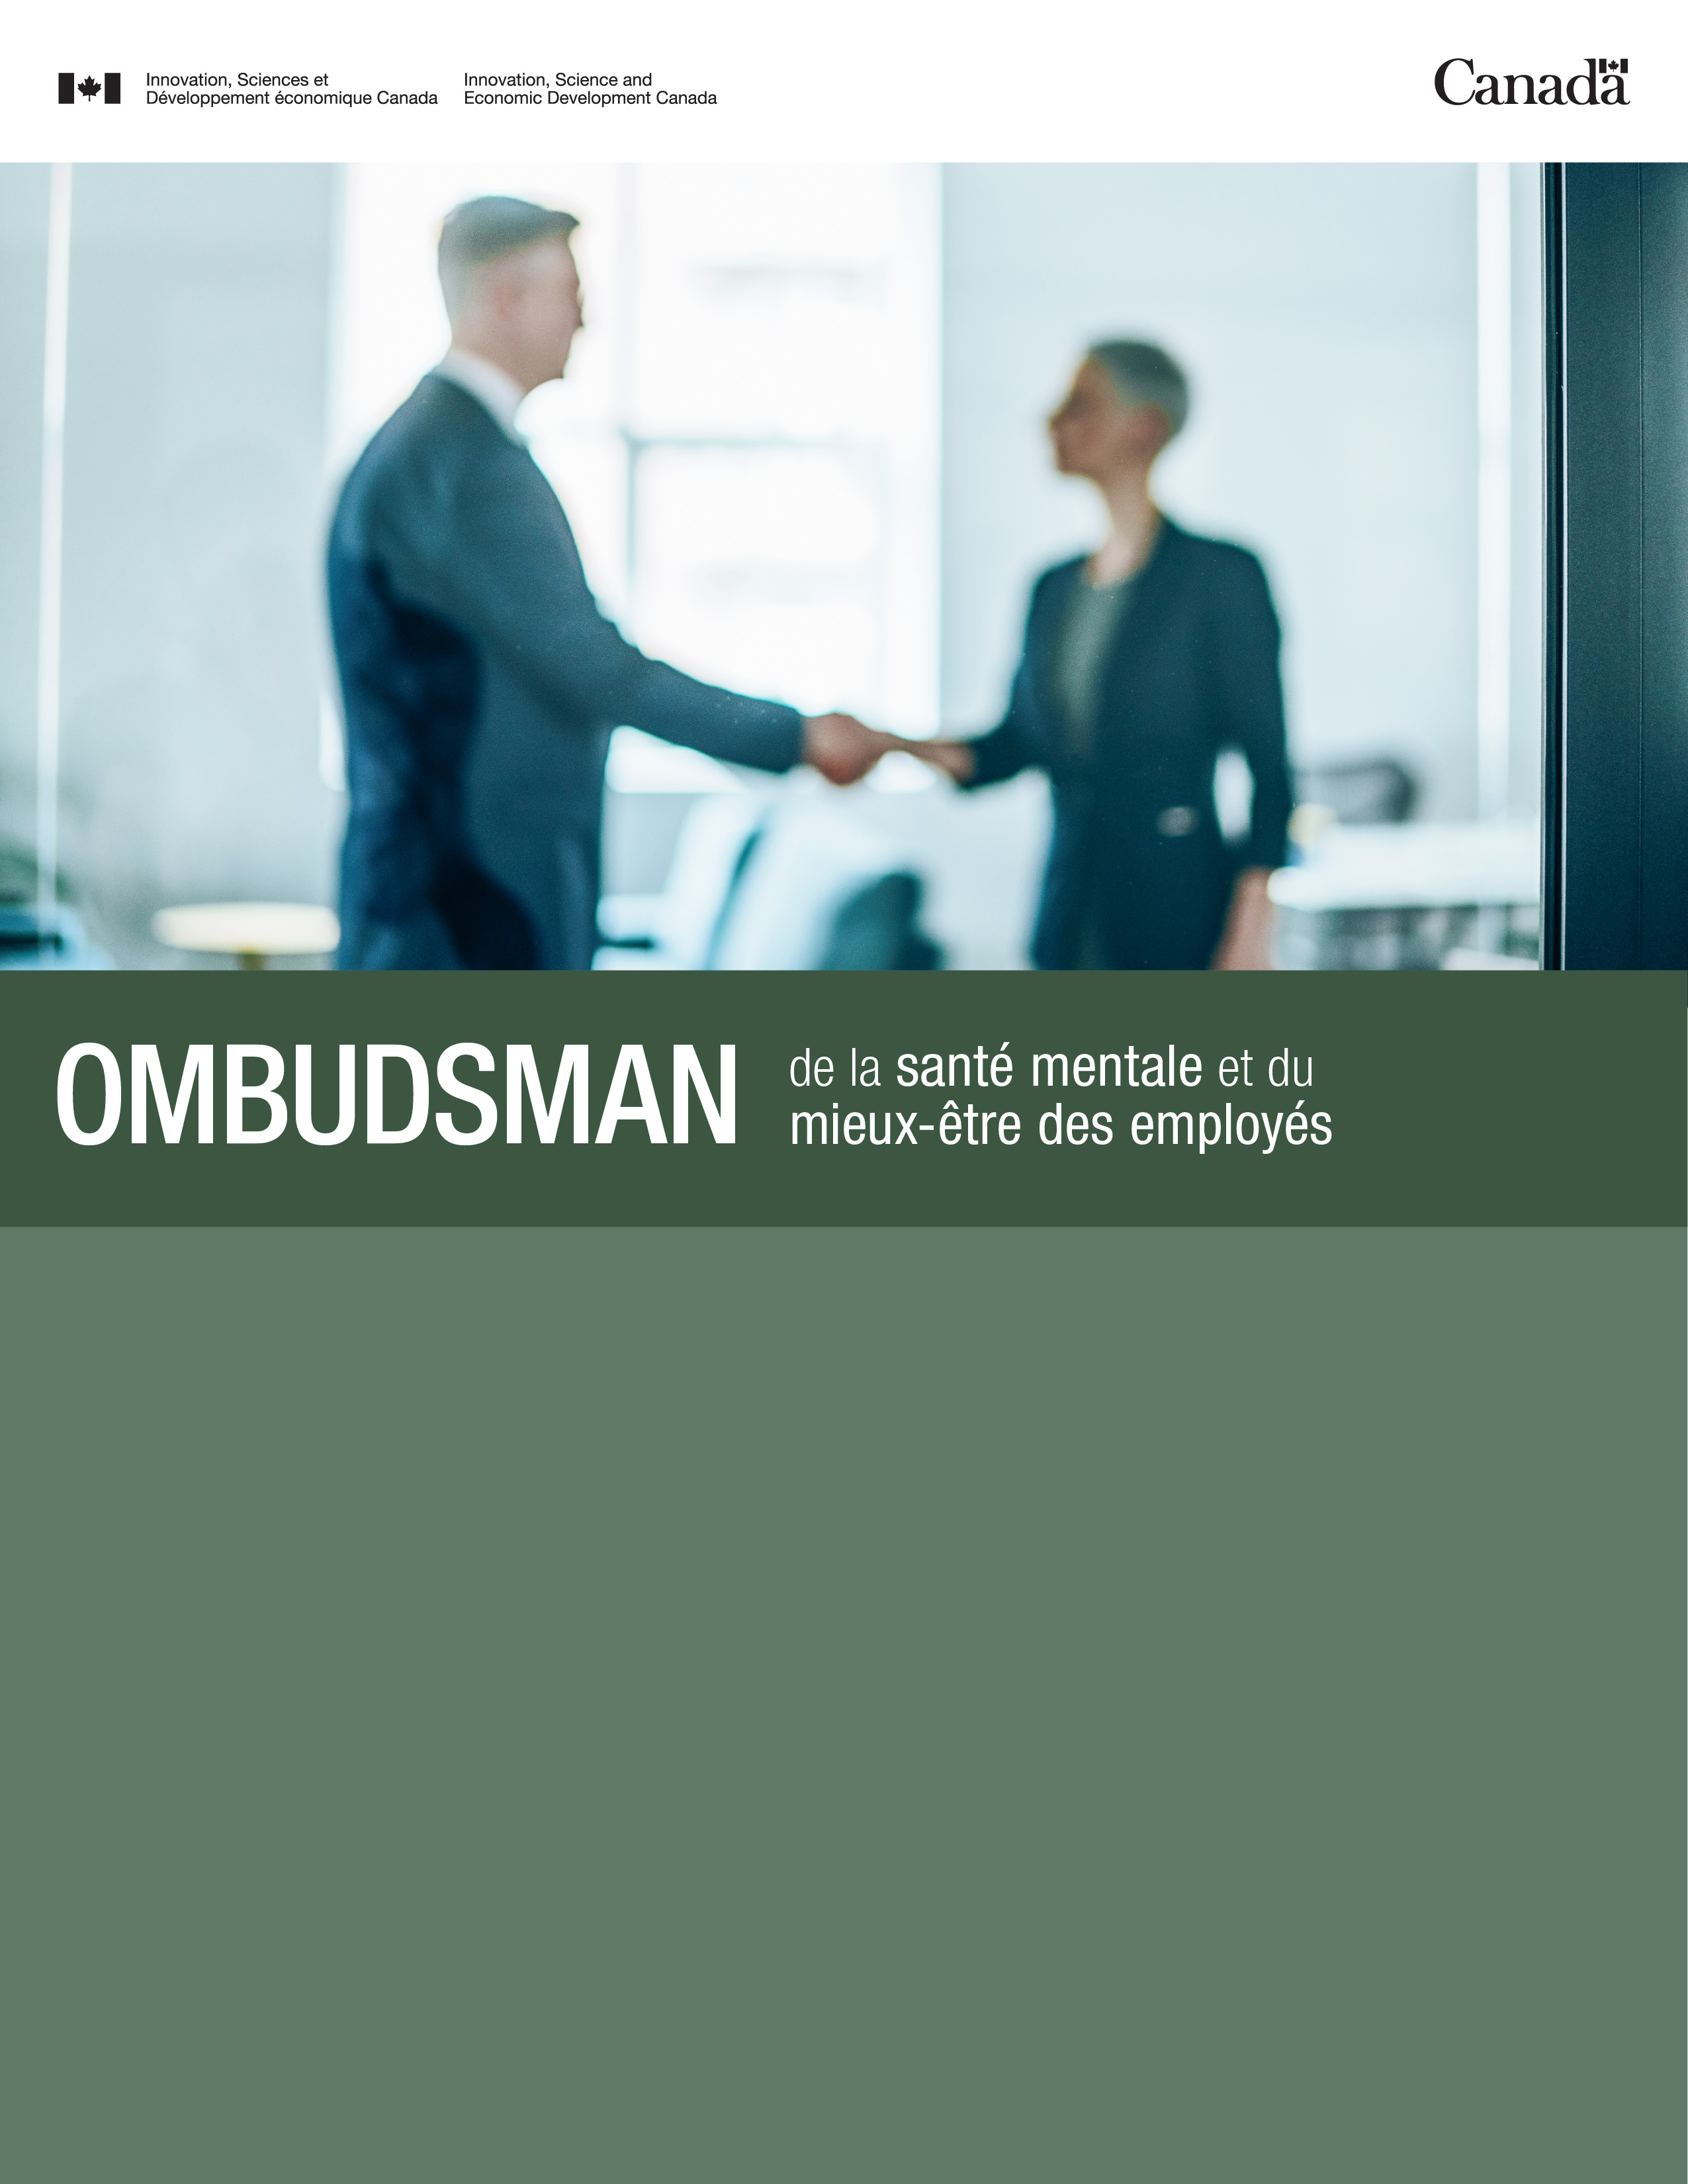 Le Bureau de l'ombudsman de la santé mentale et du mieux-être des employés